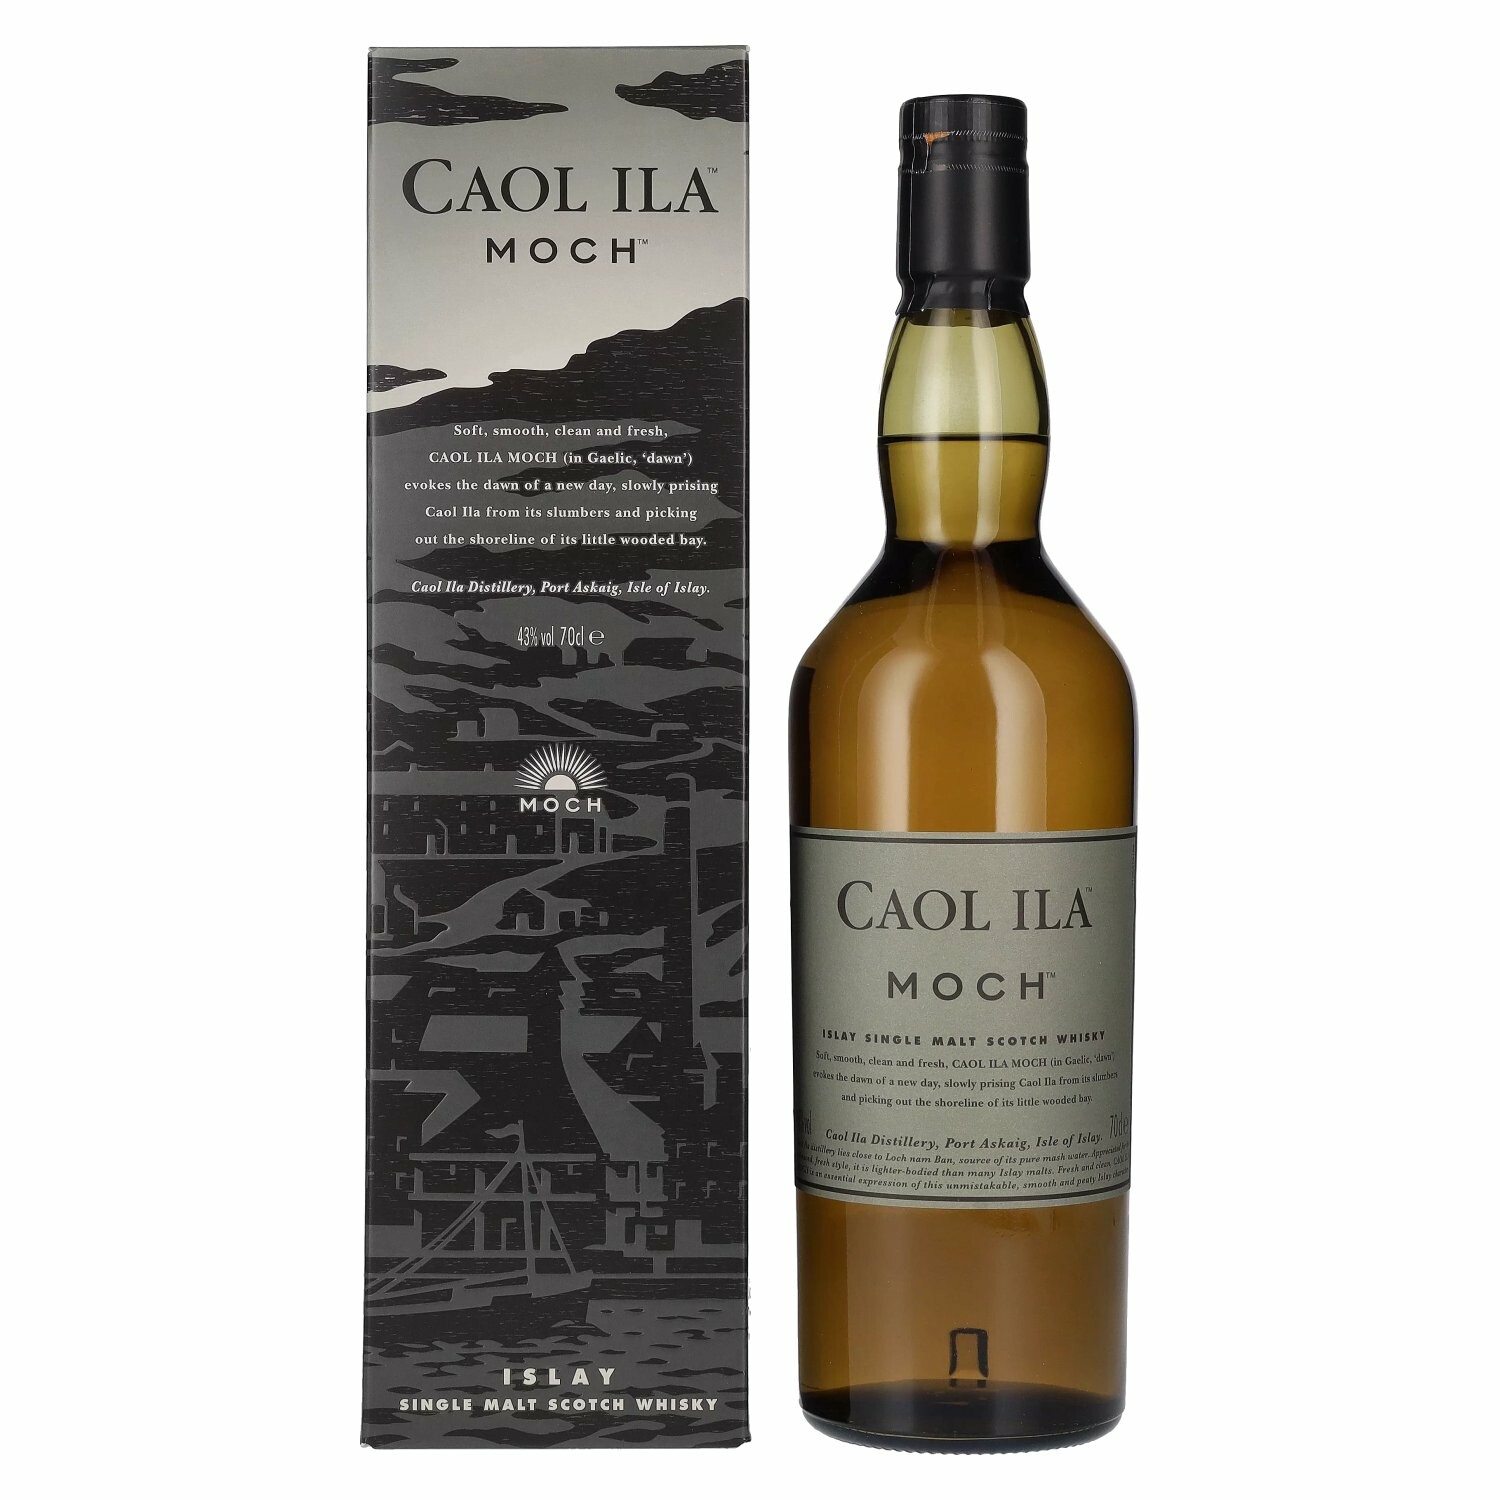 Caol Ila The Distillers Edition 2021 Double Matured 2009 43% Vol. 0,7l in Giftbox